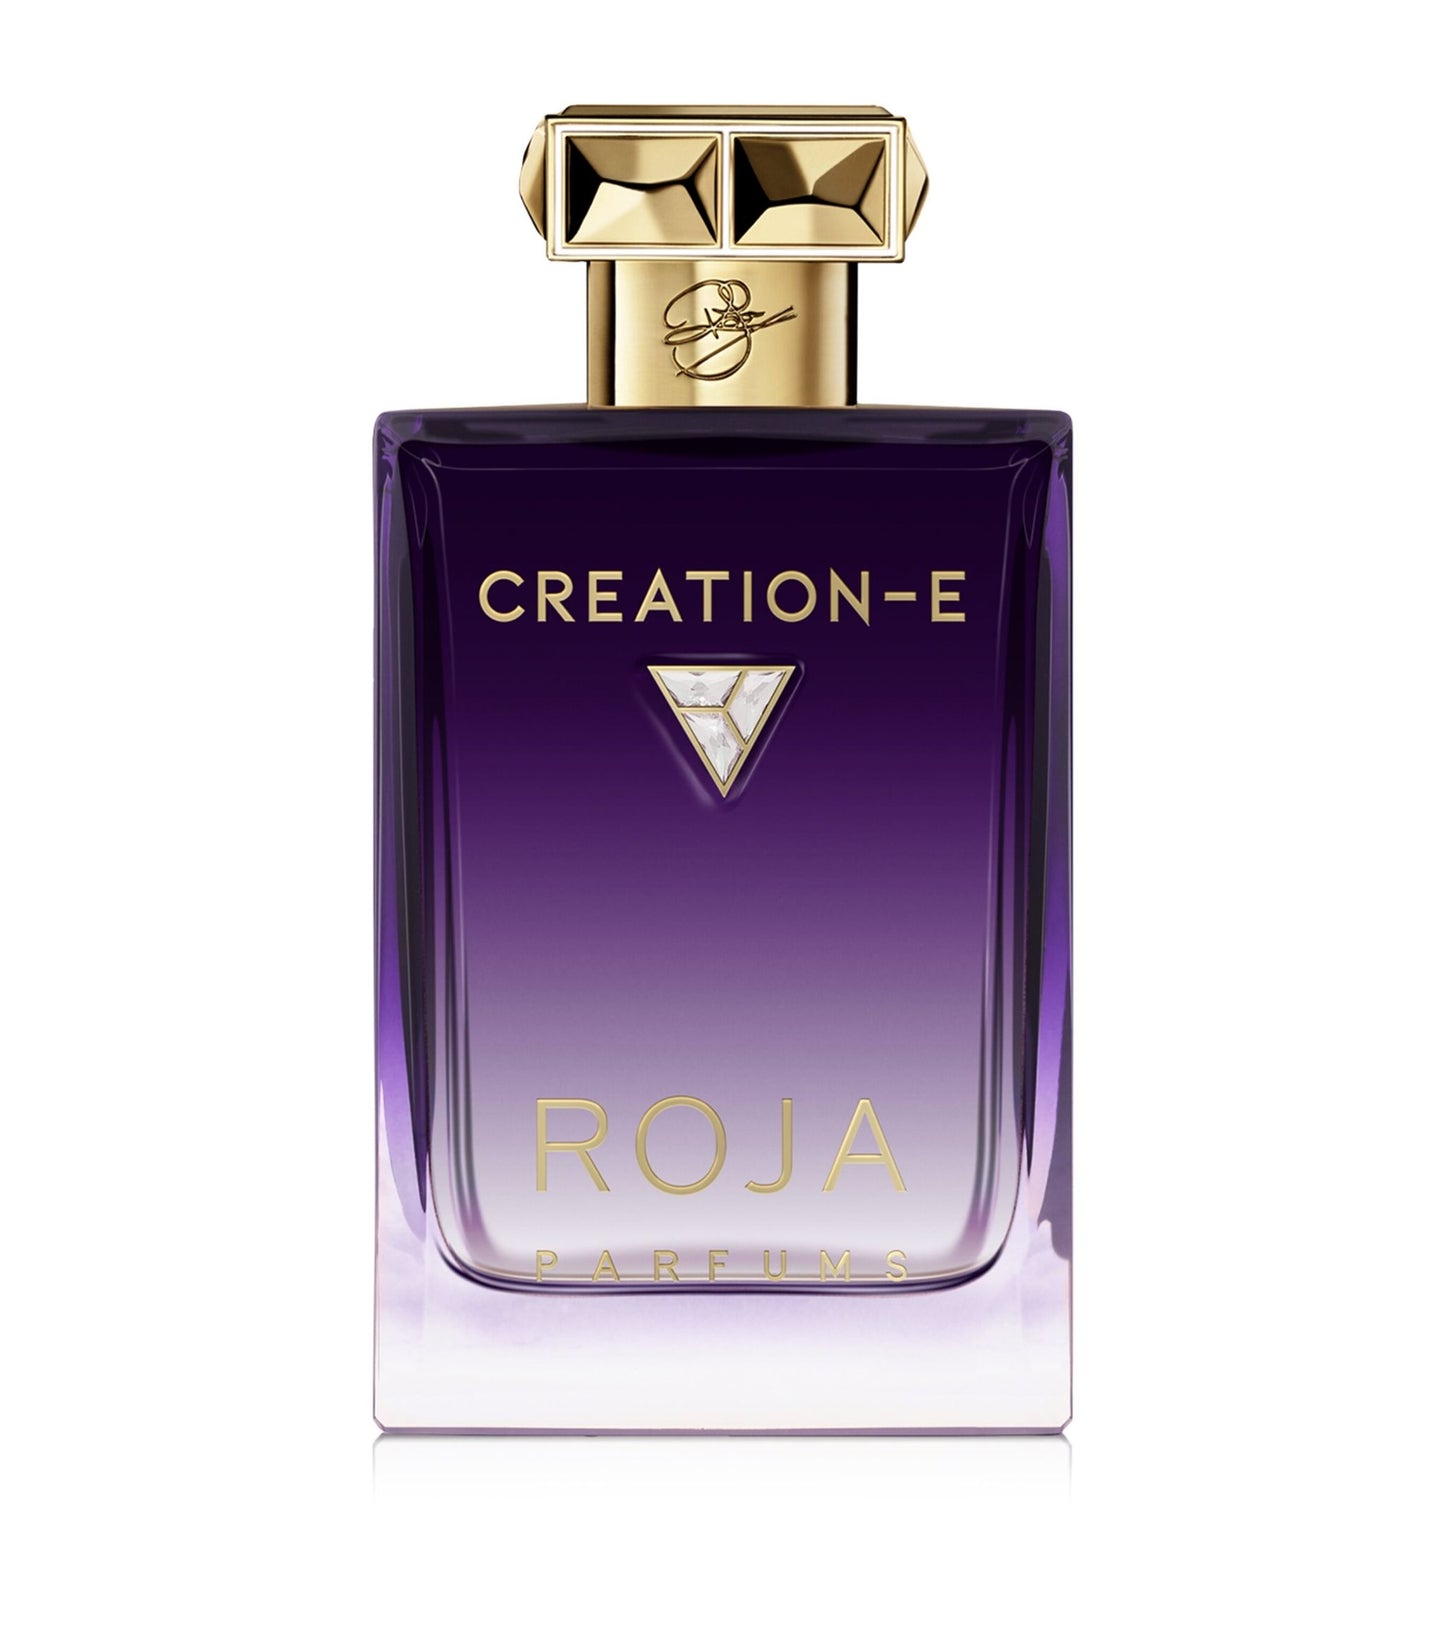 Roja Creation-E Essence de Parfum